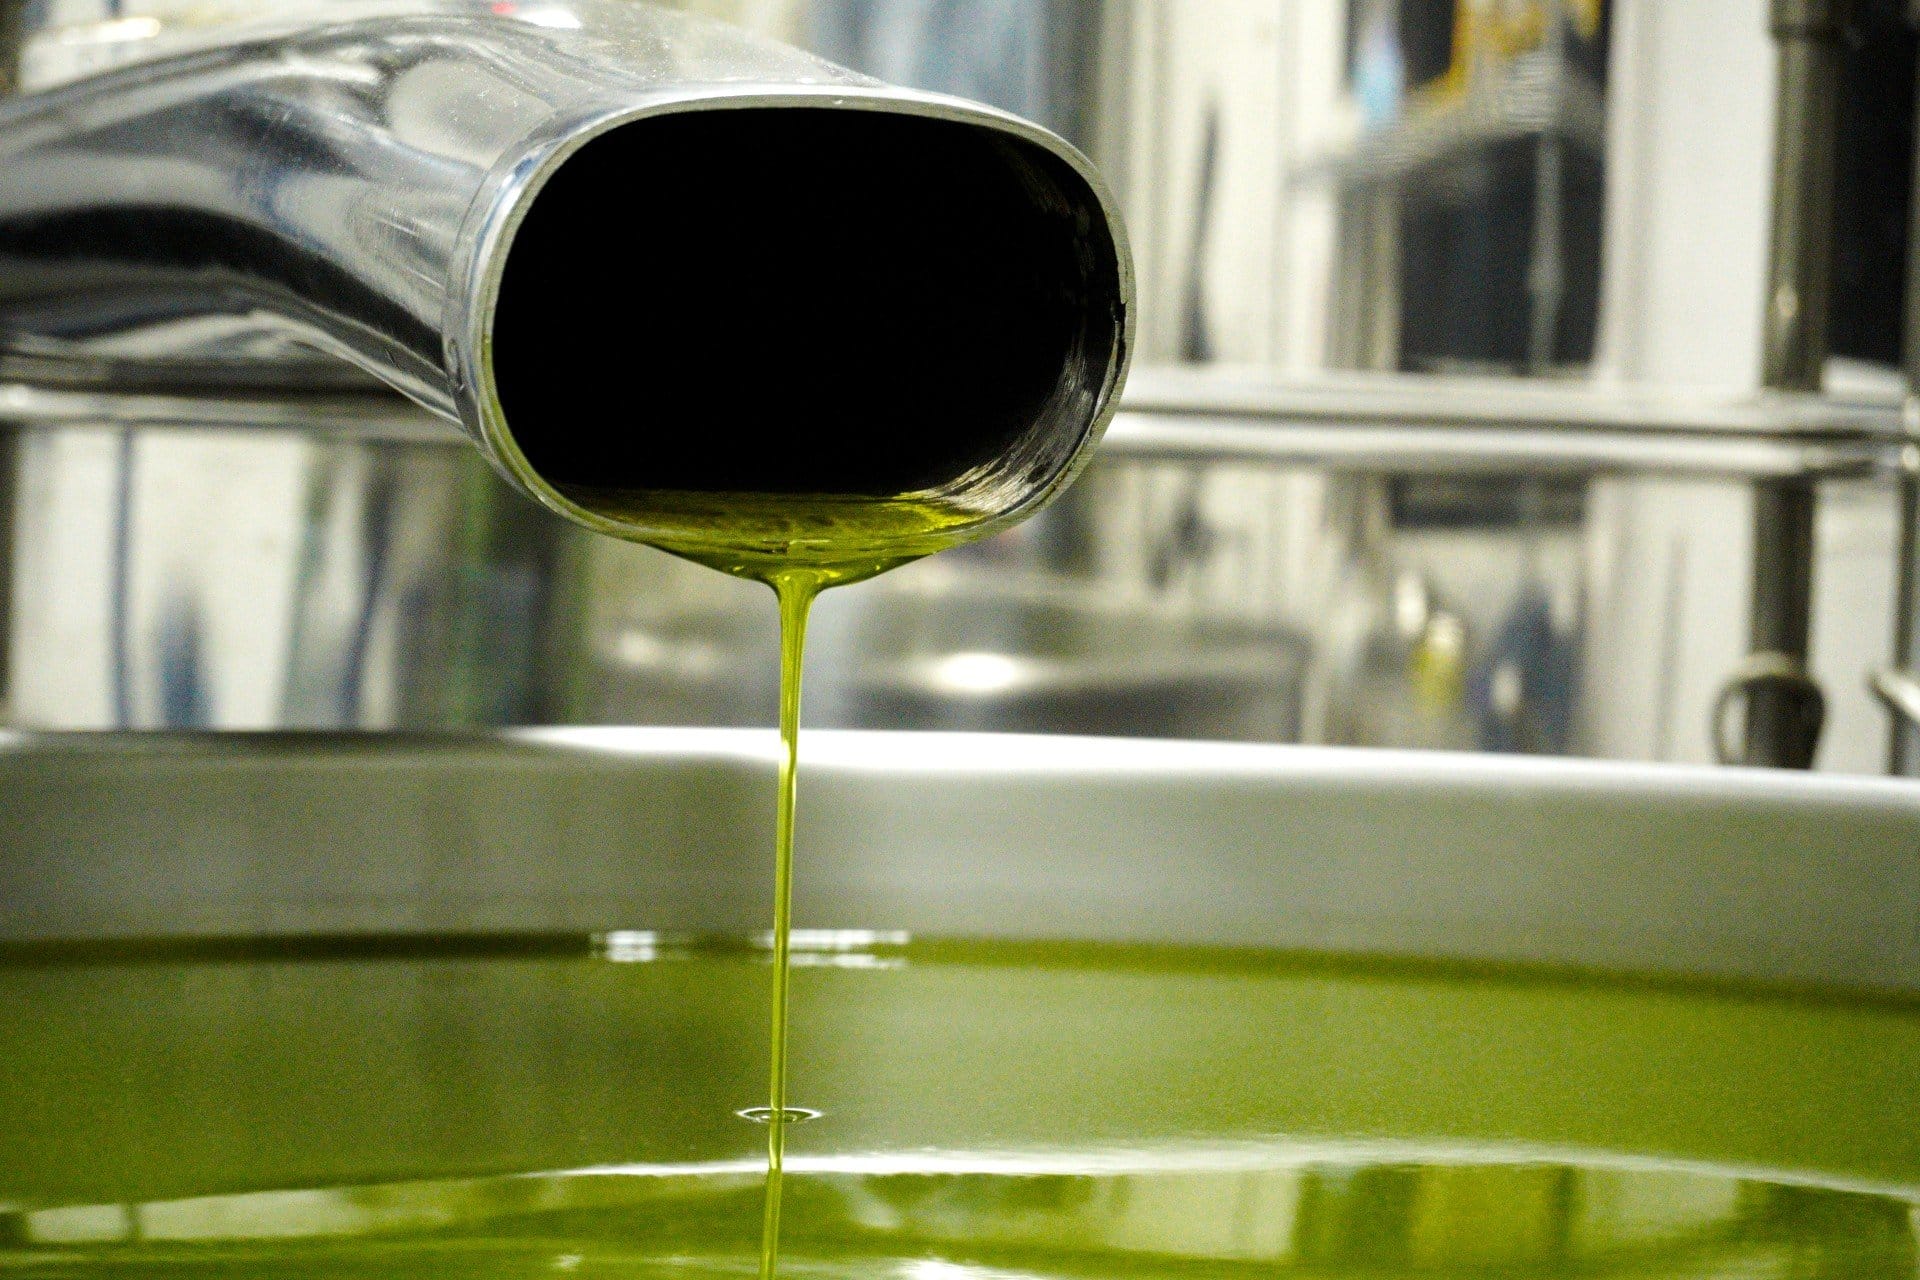 južna-amerika-profili-najboljše-proizvodnje-olivnega-olja-brazilije-največji-proizvajalec-praznuje-zmagoslavno-žetev-olivnega-olja-časi